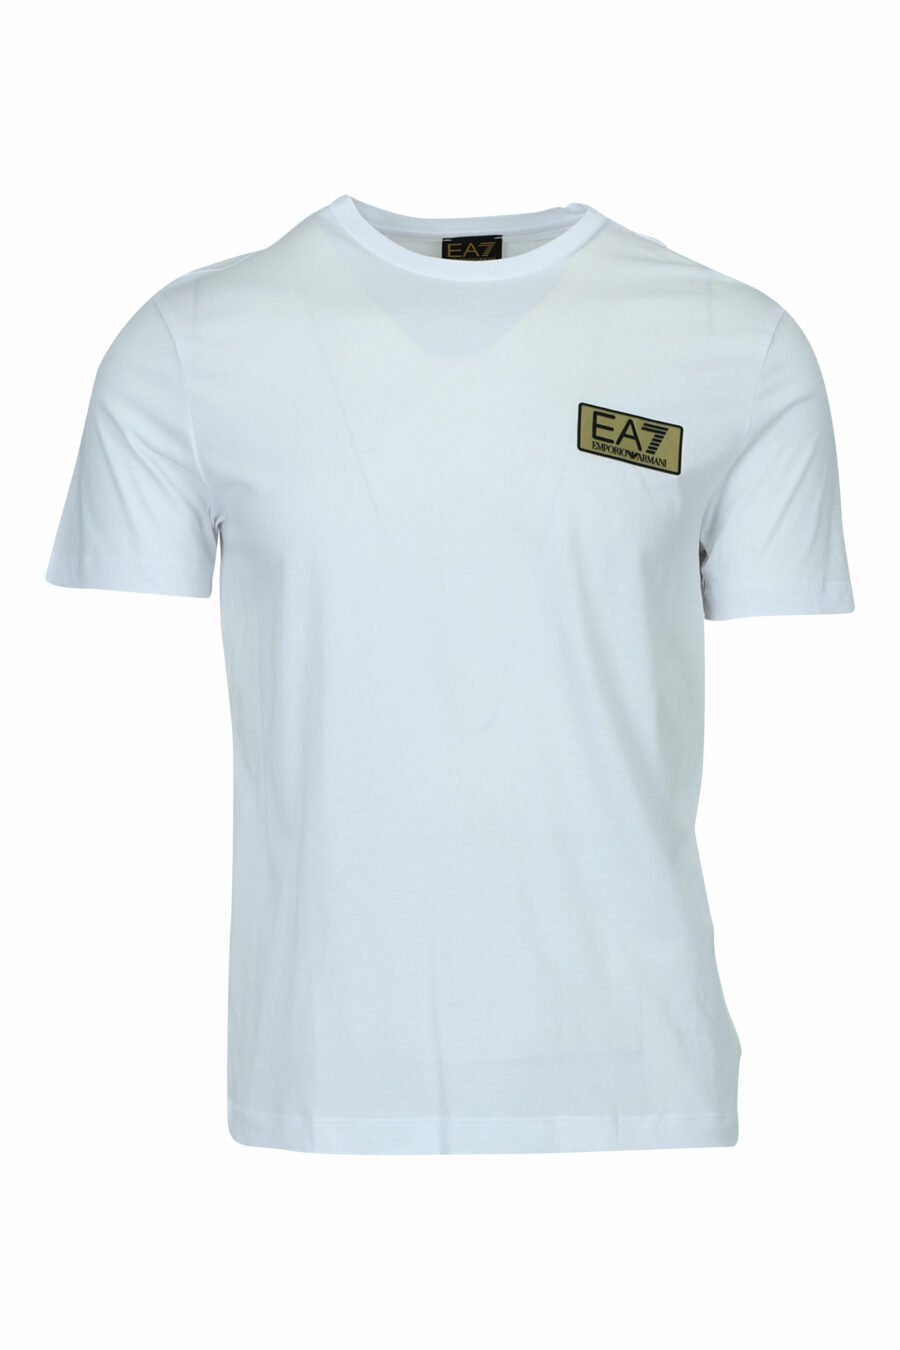 Camiseta blanca con minilogo "lux identity" en placa dorada - 8058947471904